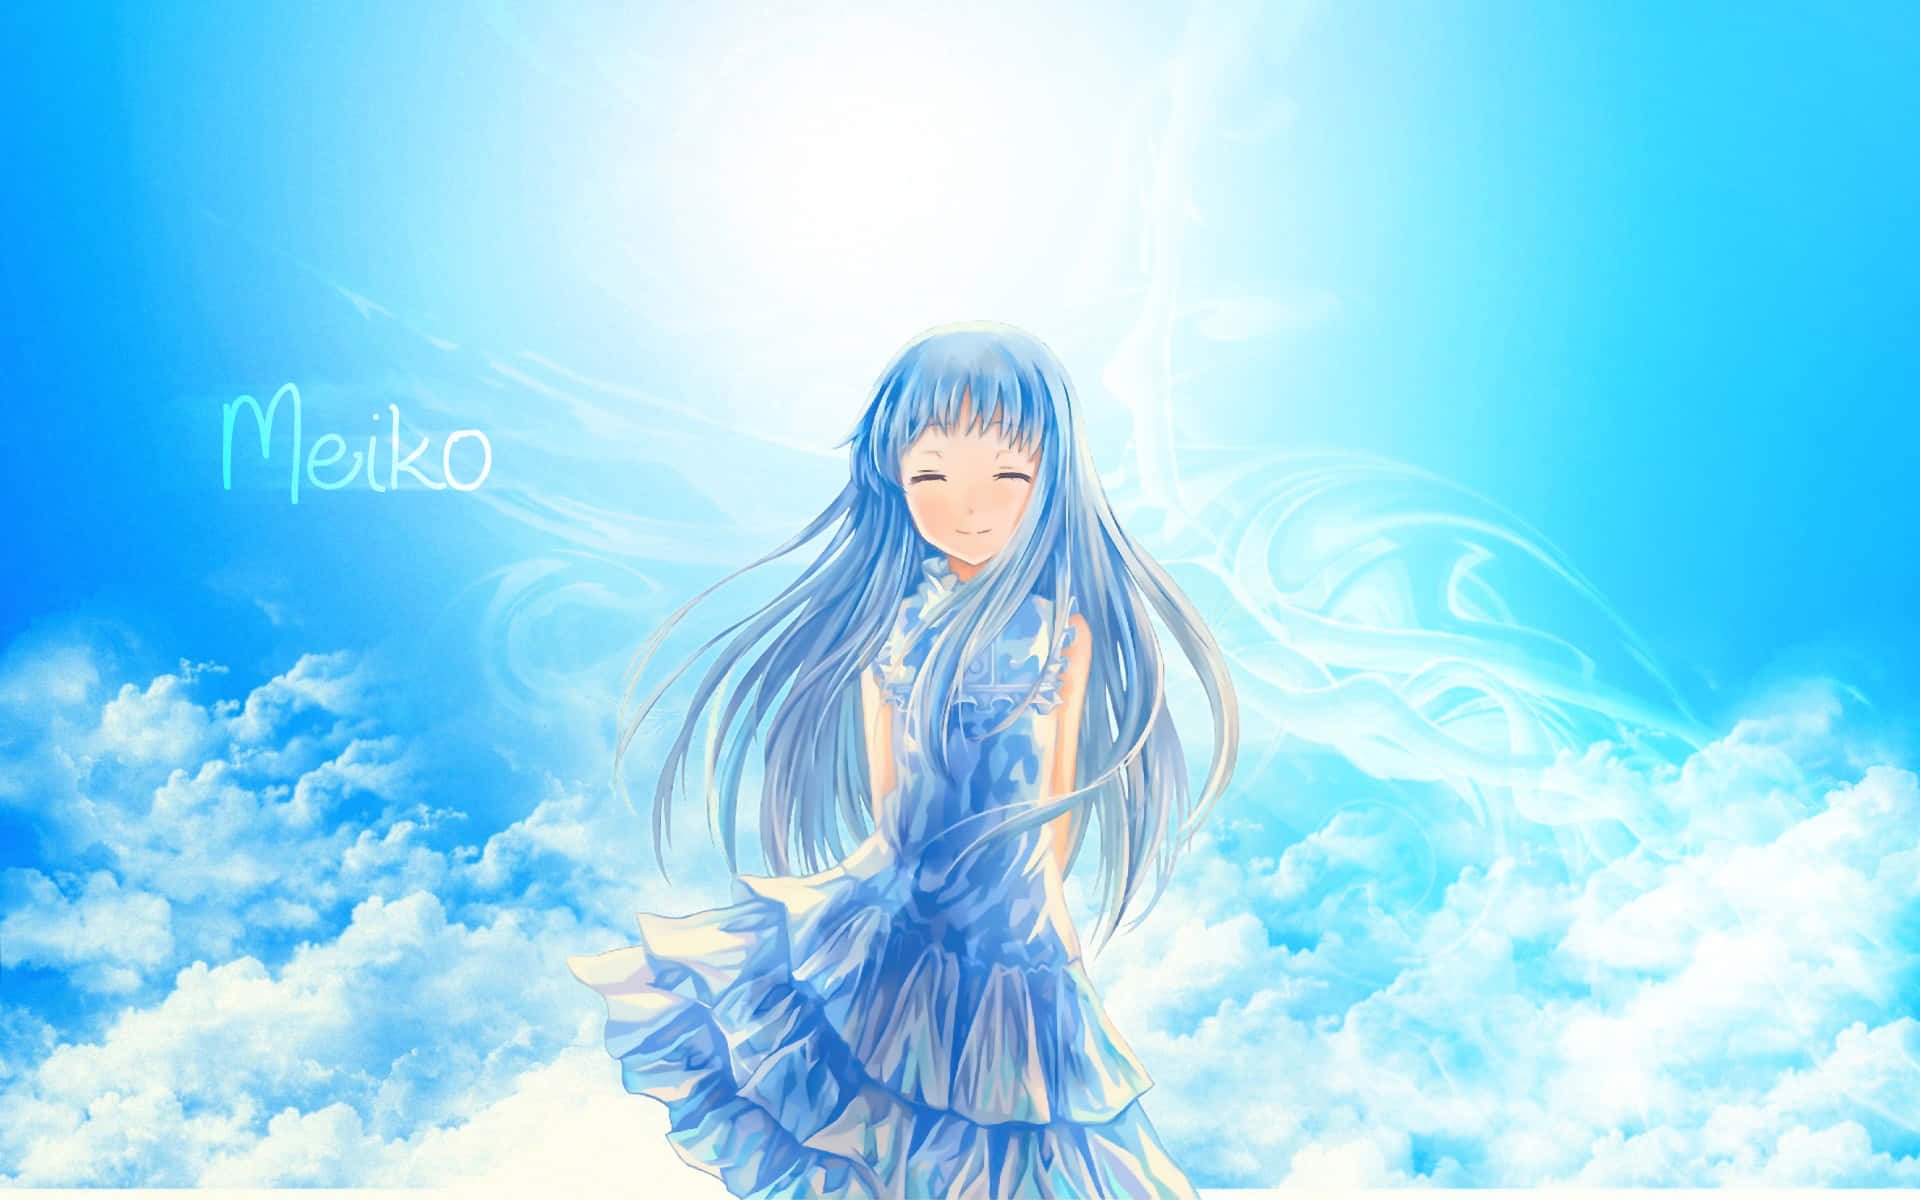 Meiko "menma" Honma - The Innocent Spirit Wallpaper